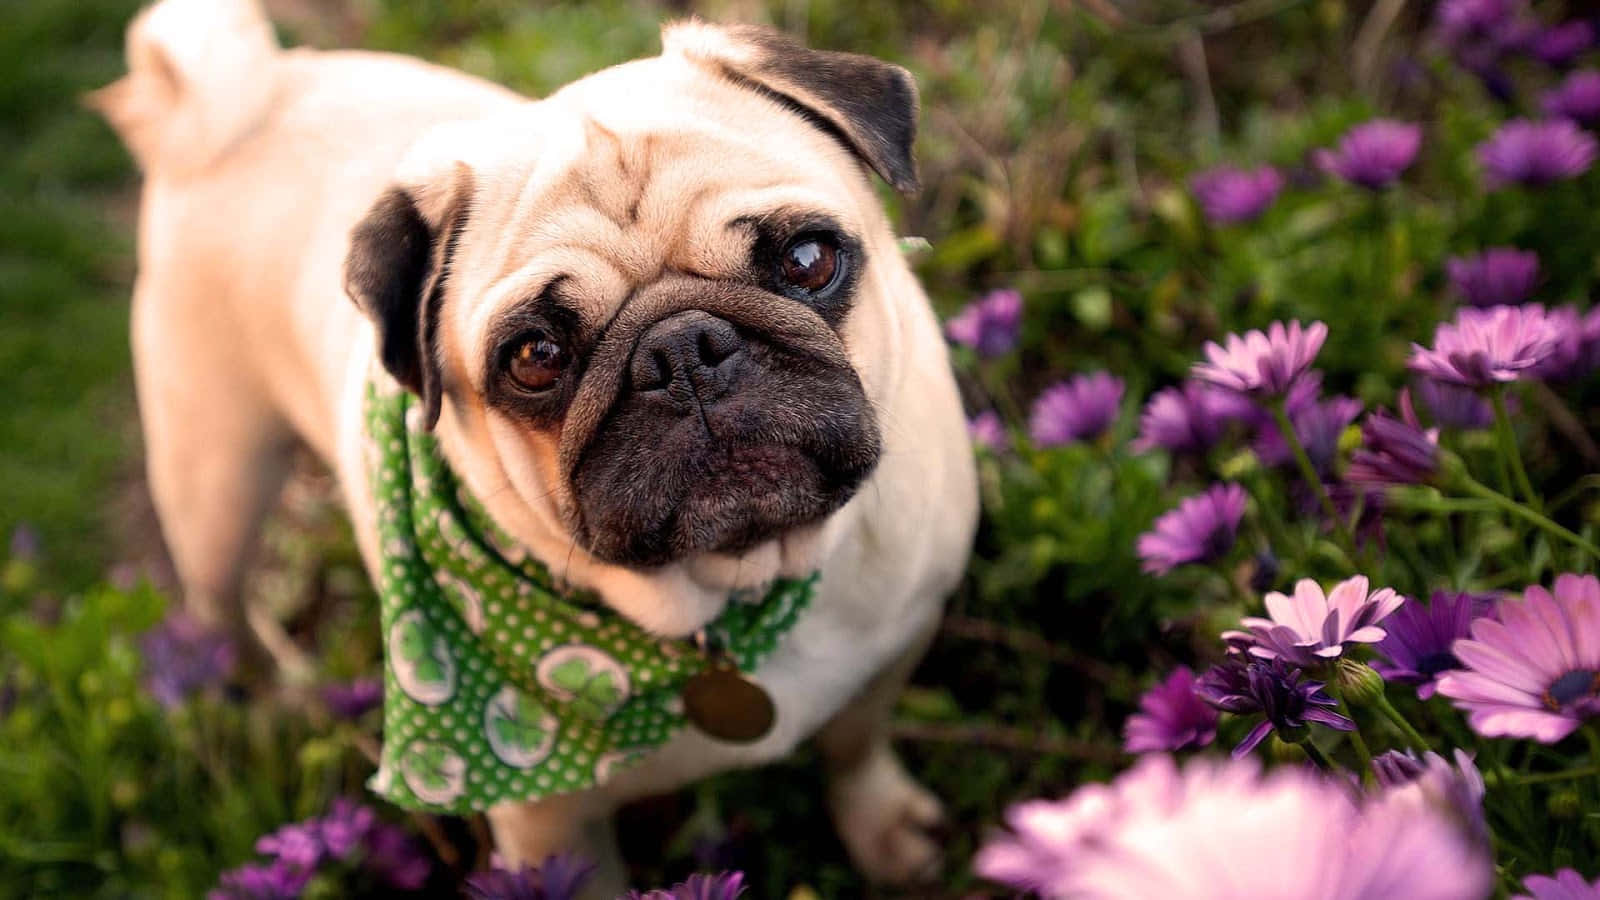 Cute Pug On A Flower Field Wallpaper